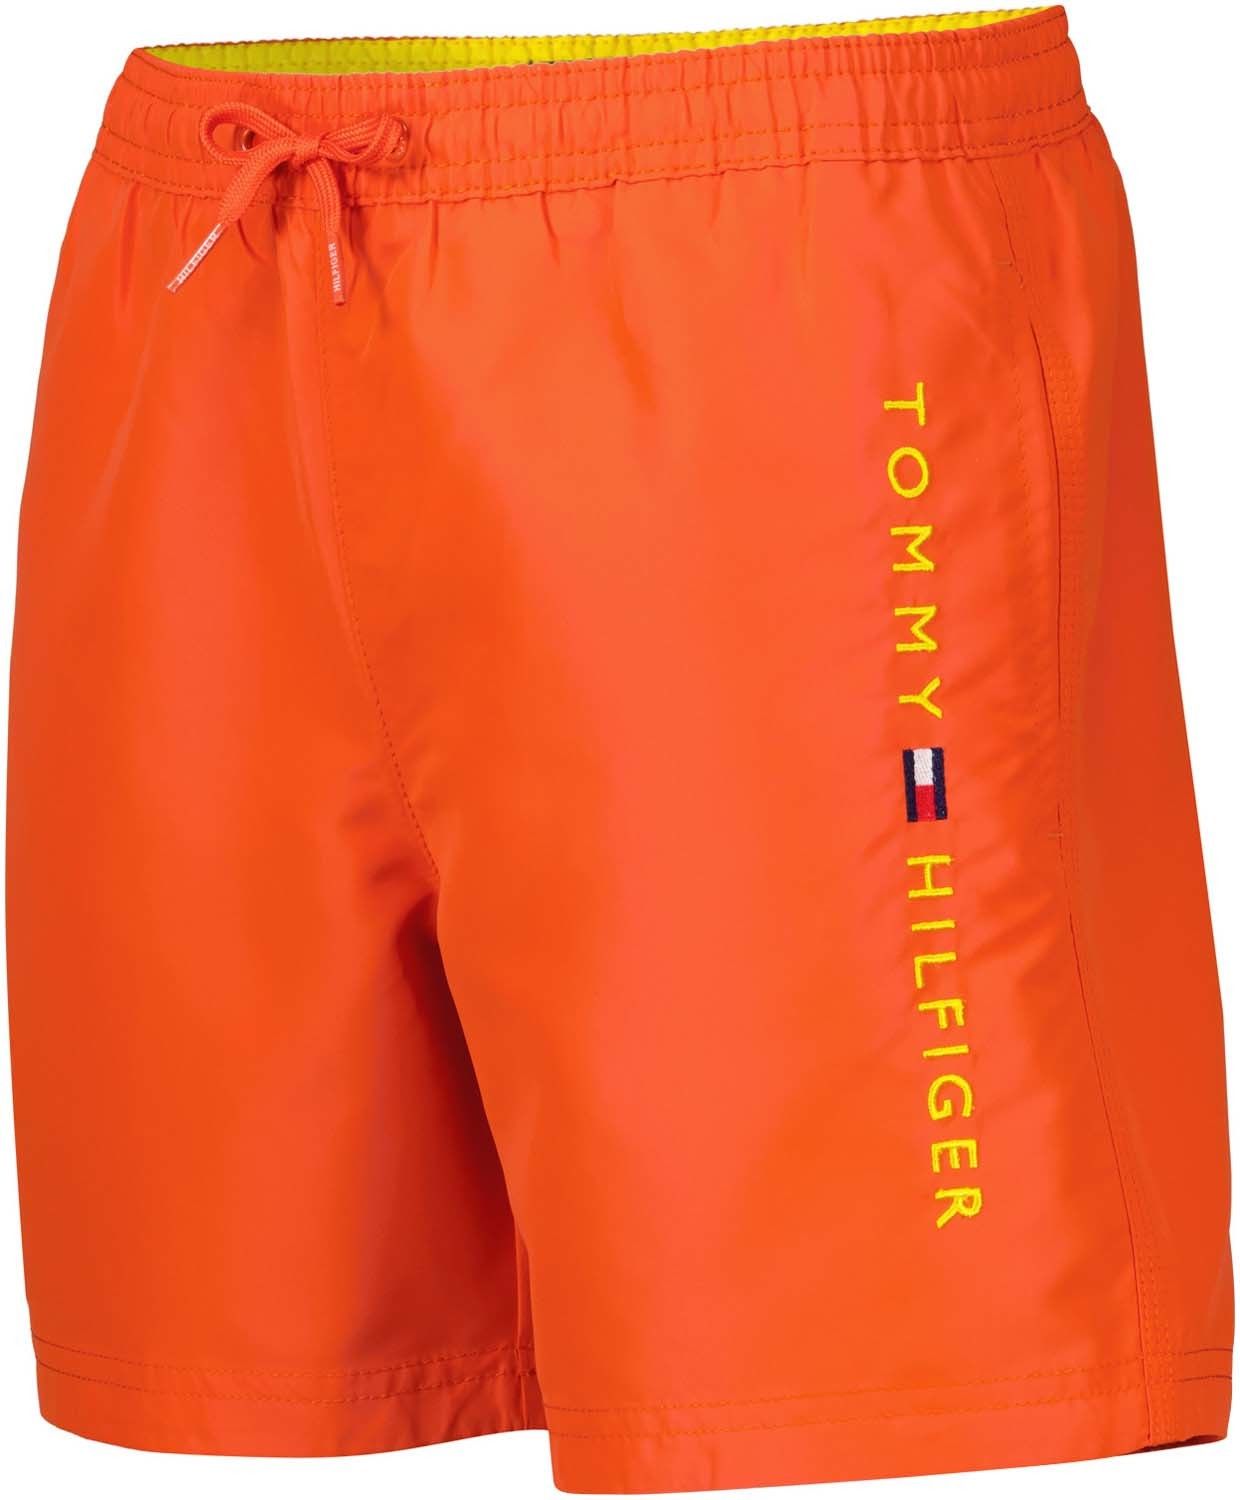 het beleid Uitpakken Oneerlijk Tommy Hilfiger medium drawstring Oranje Badkleding | Gratis bezorging -  Bomont.nl